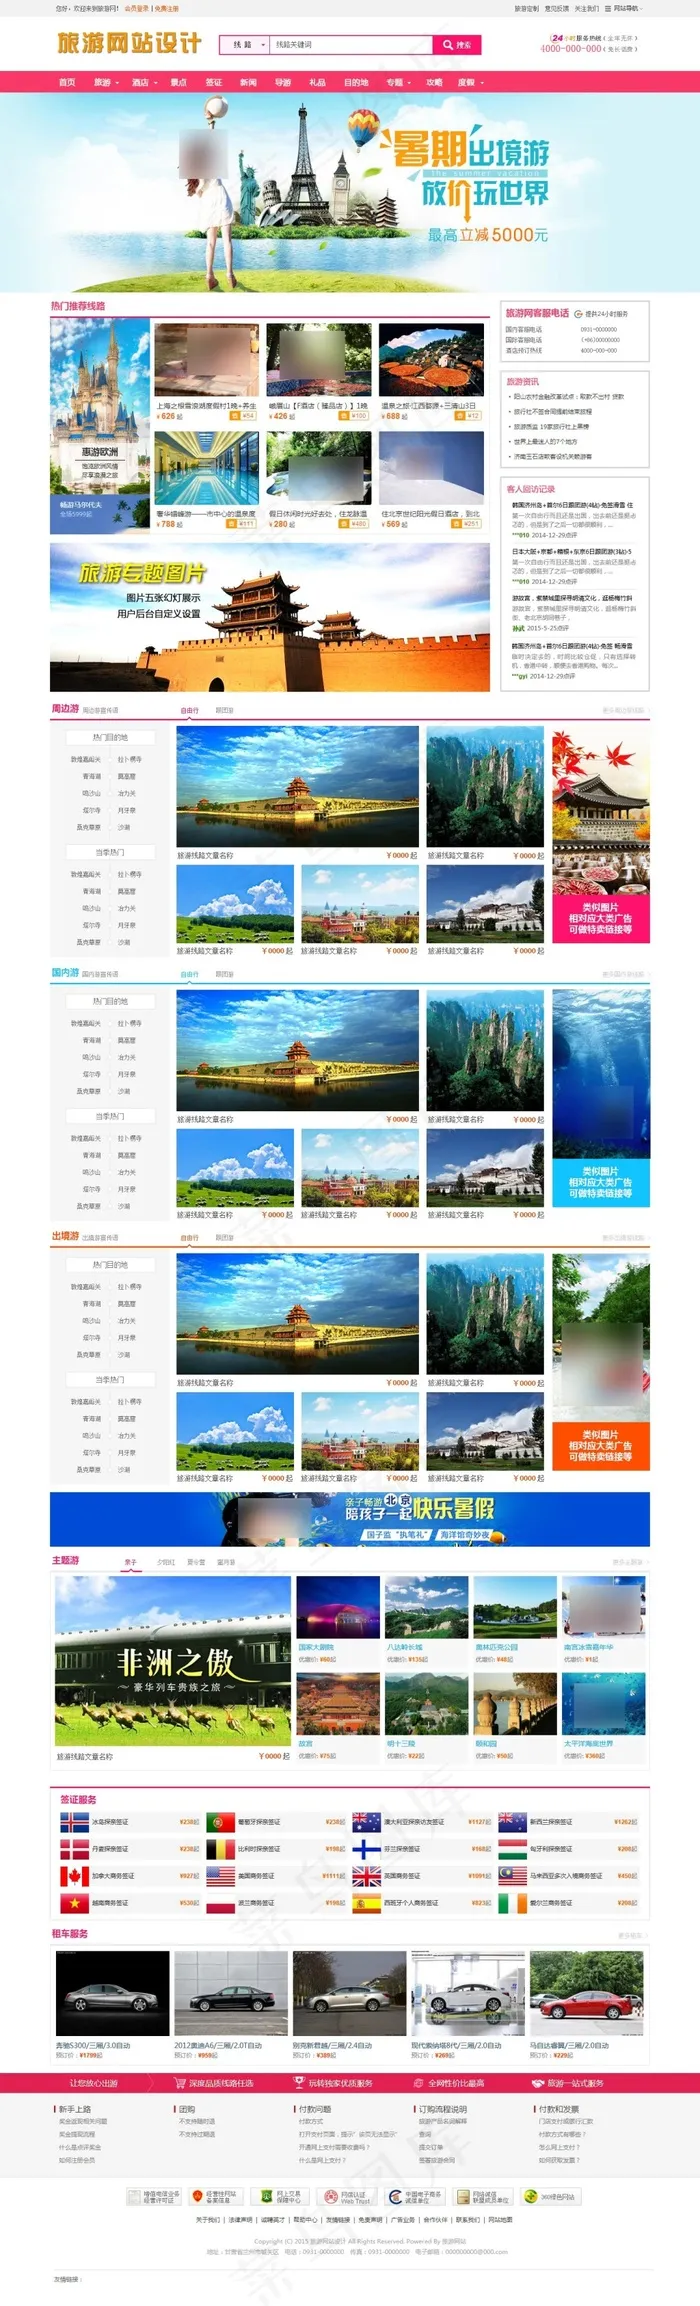 旅游网站 旅游网页设计 旅游门户网站